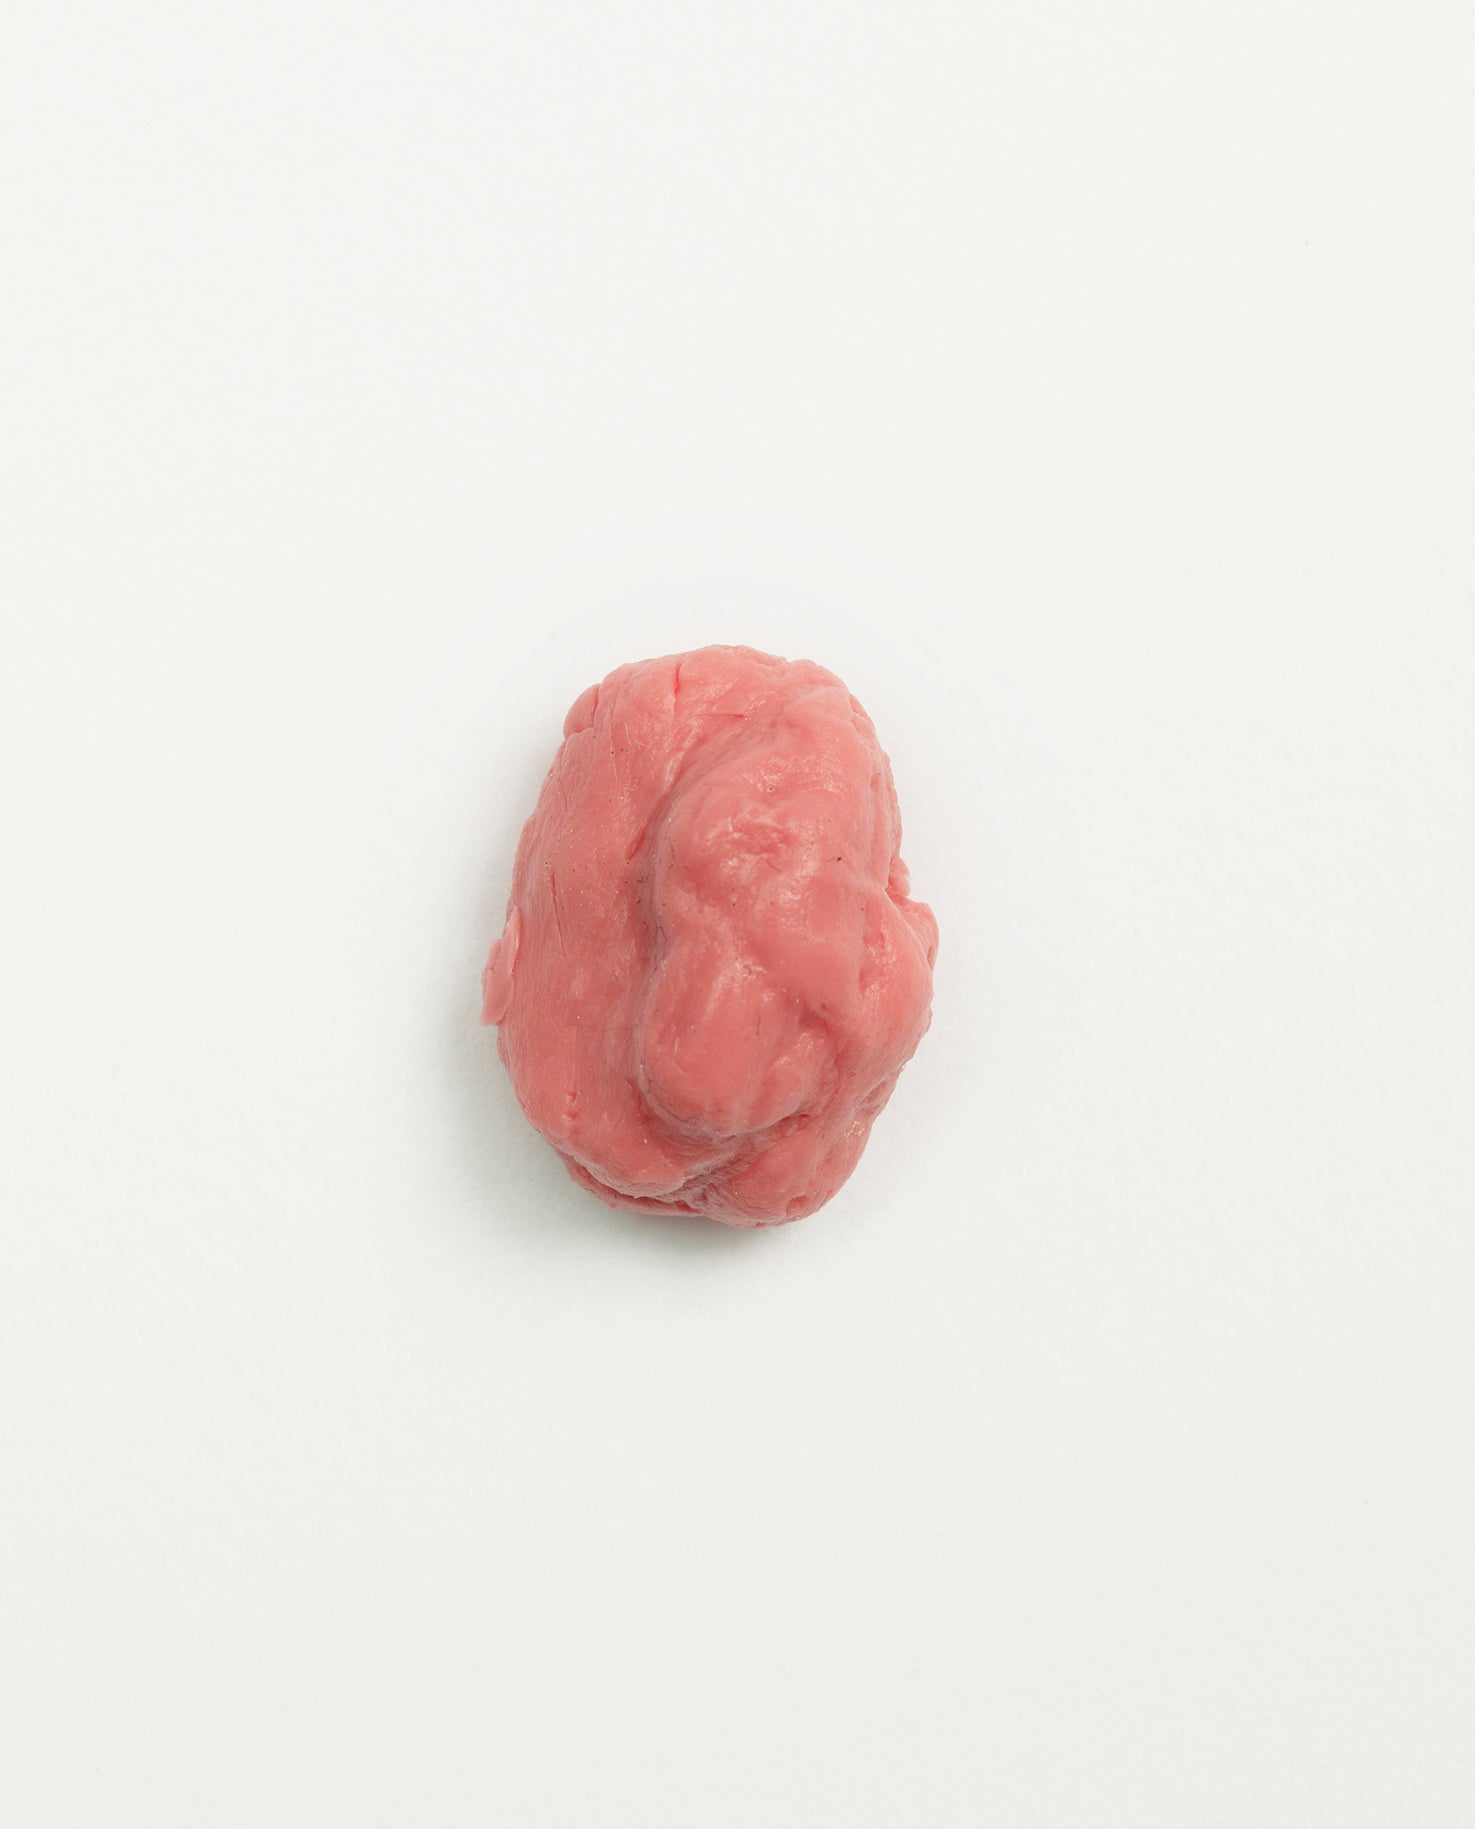 Petite sculpture chewing-gum rose en silicone aimanté de Théodore Melchior